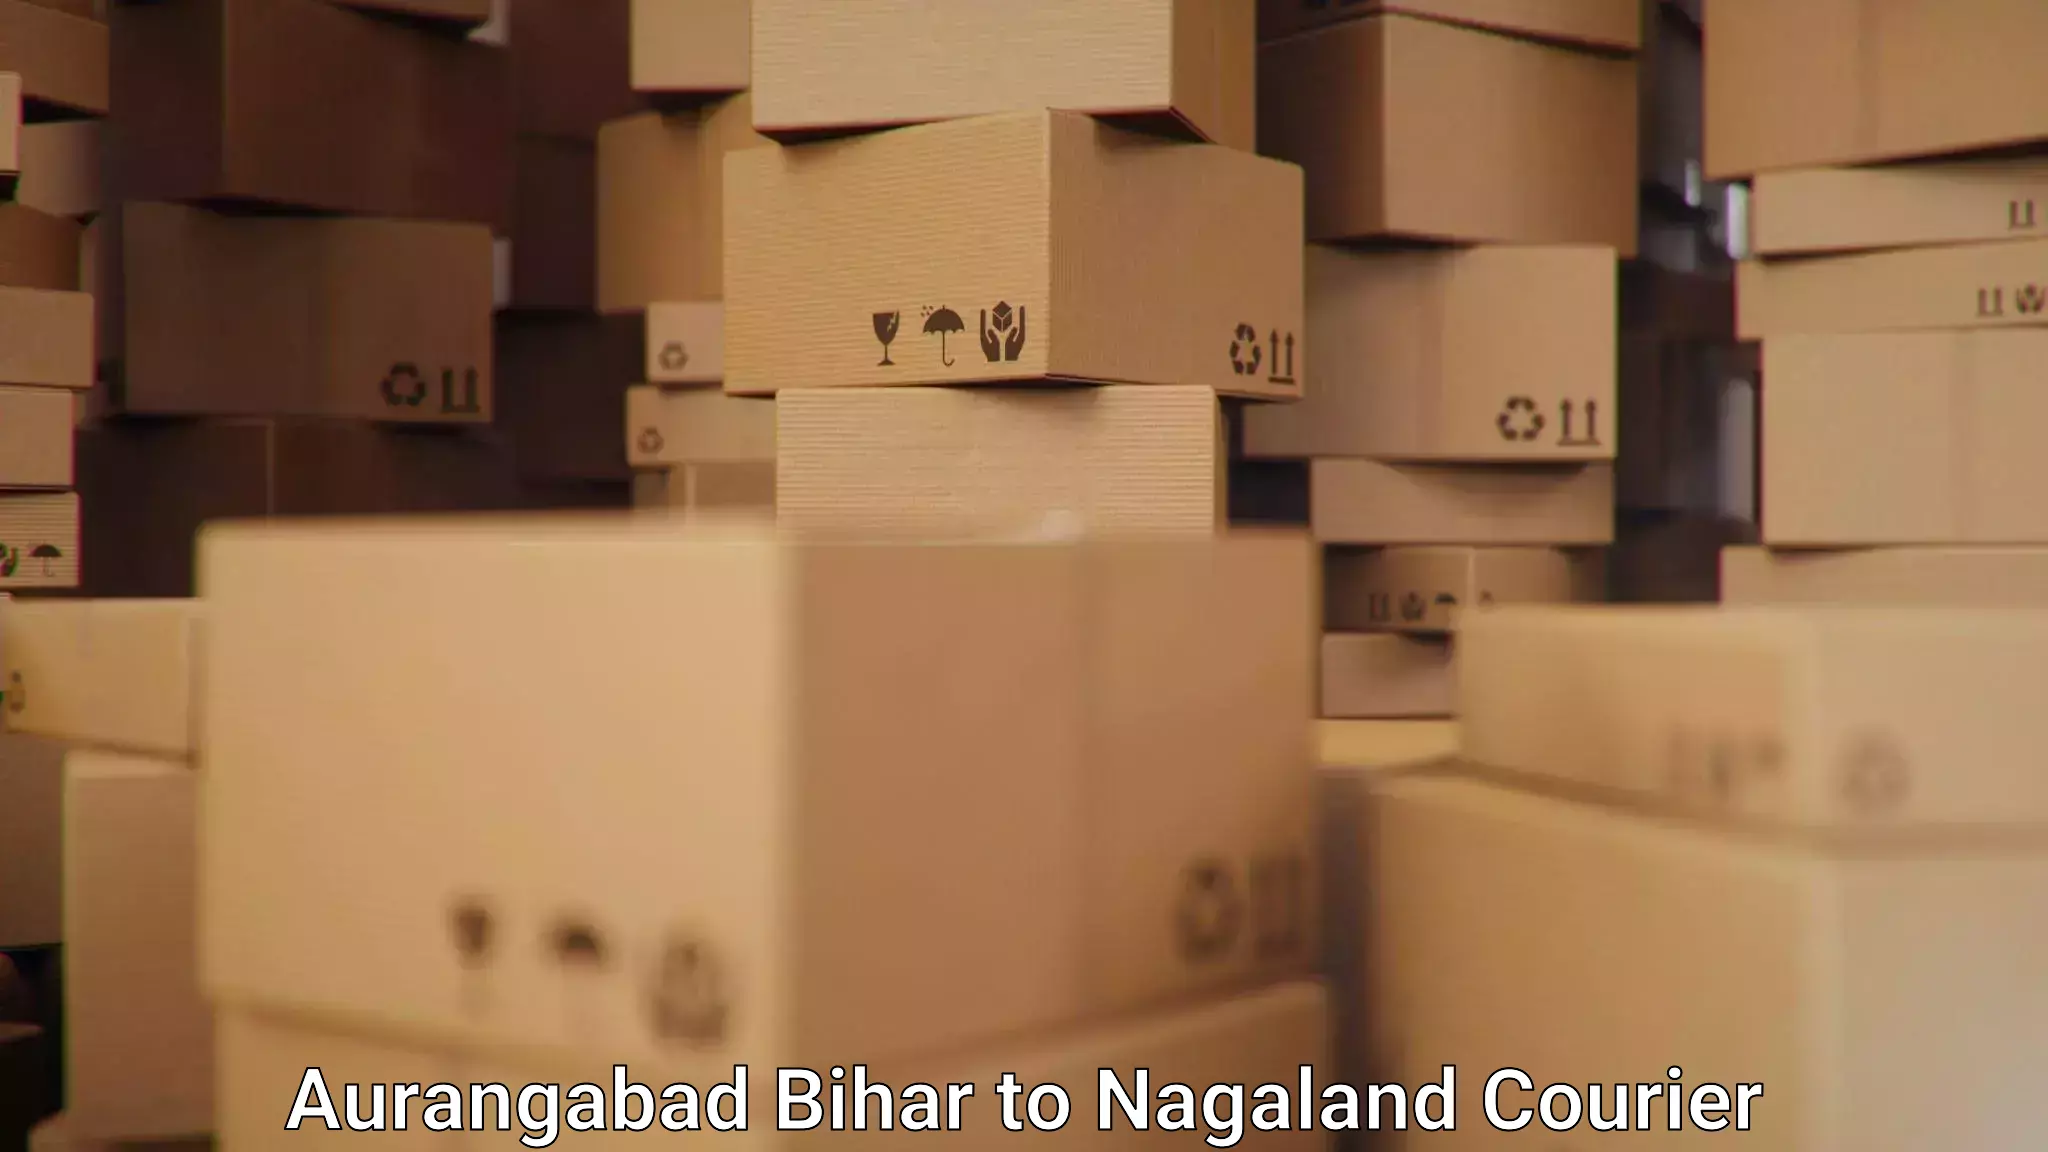 Seamless shipping service in Aurangabad Bihar to Nagaland